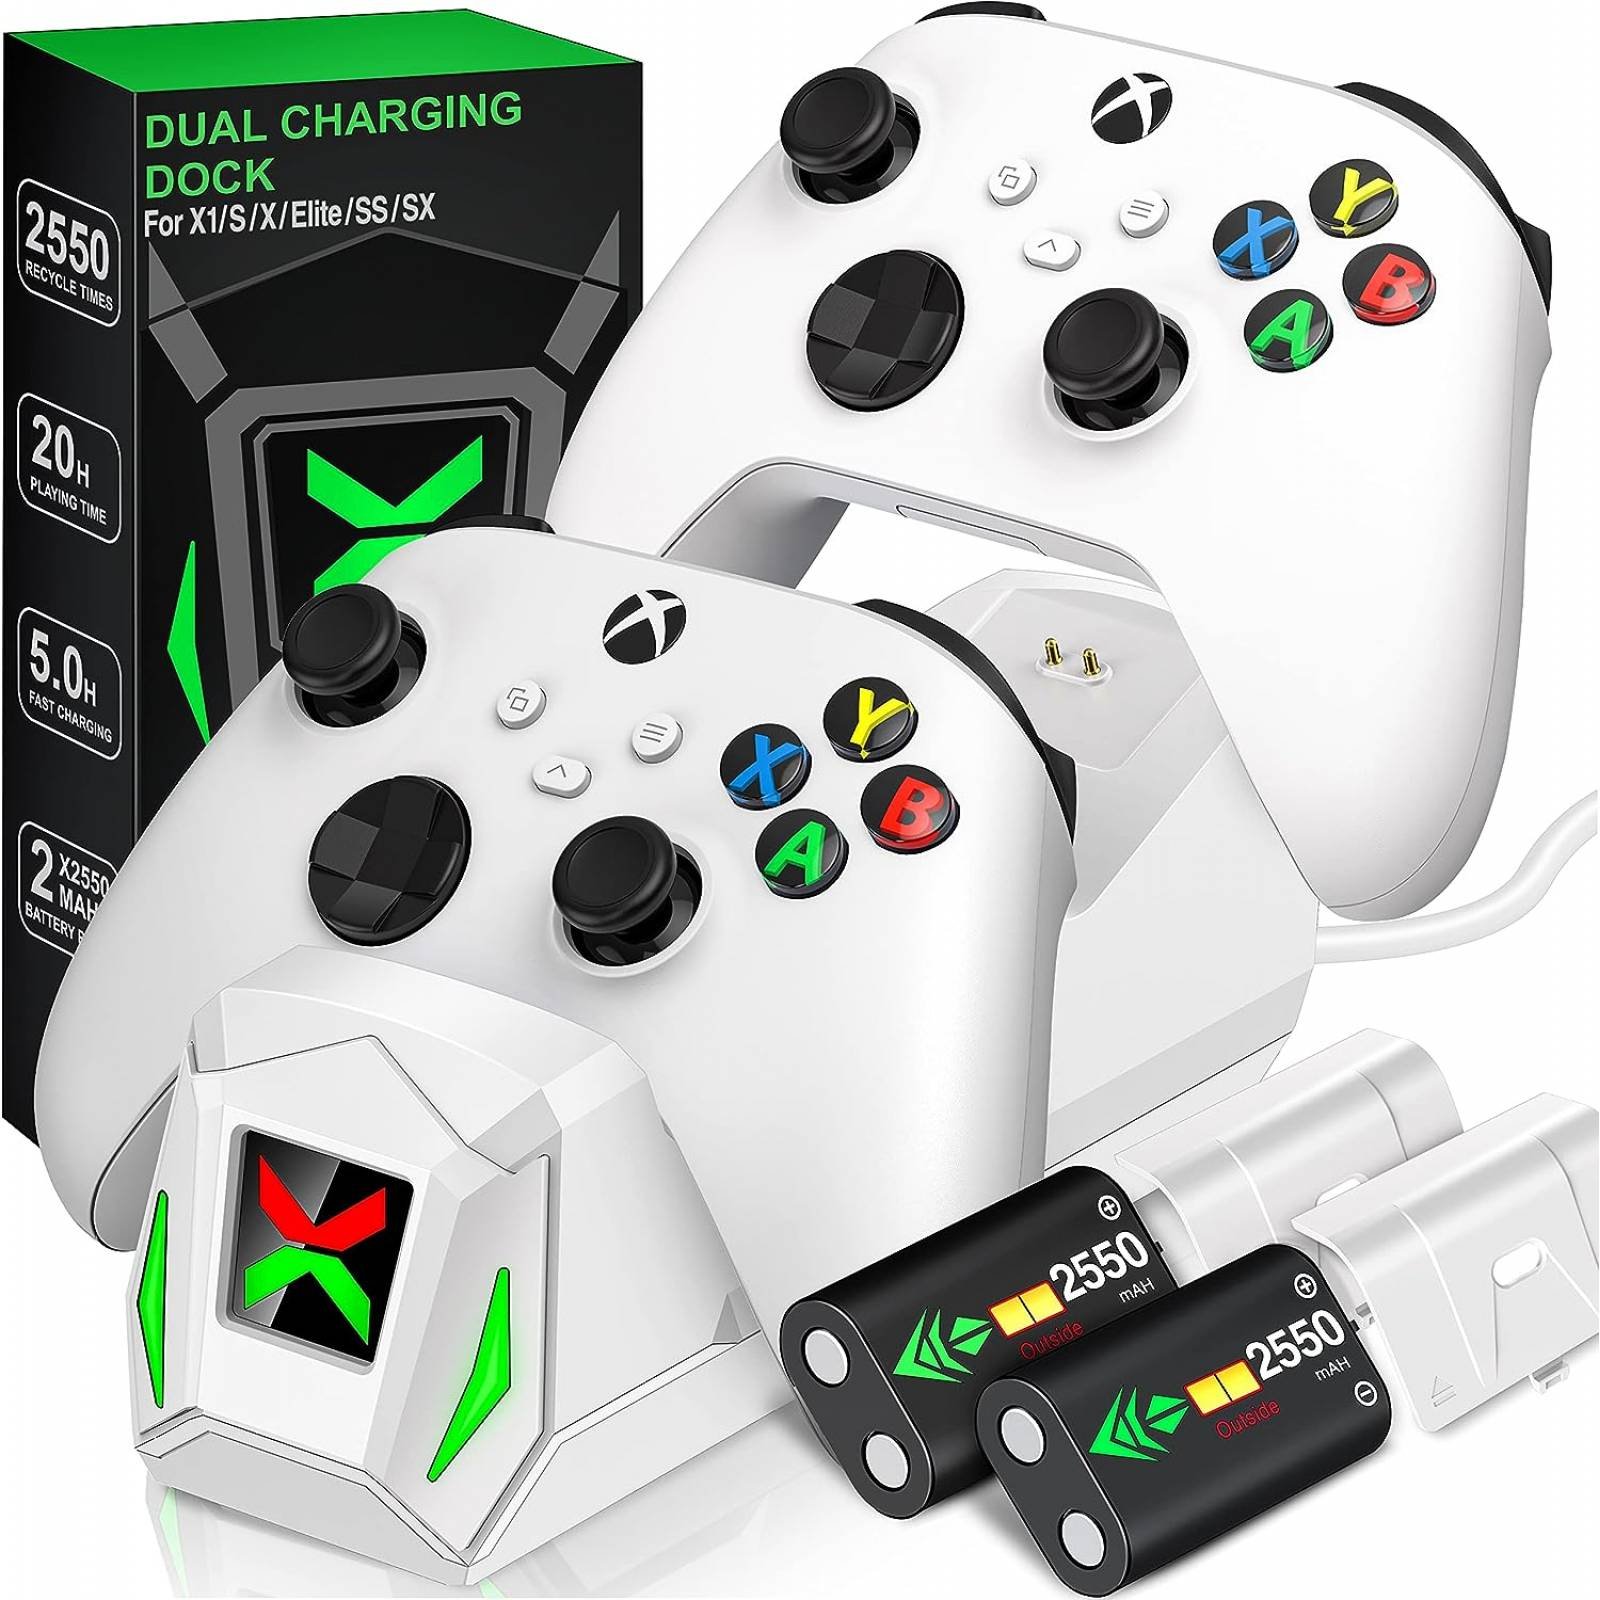 Mando inalámbrico para Xbox One, paquete de batería recargable